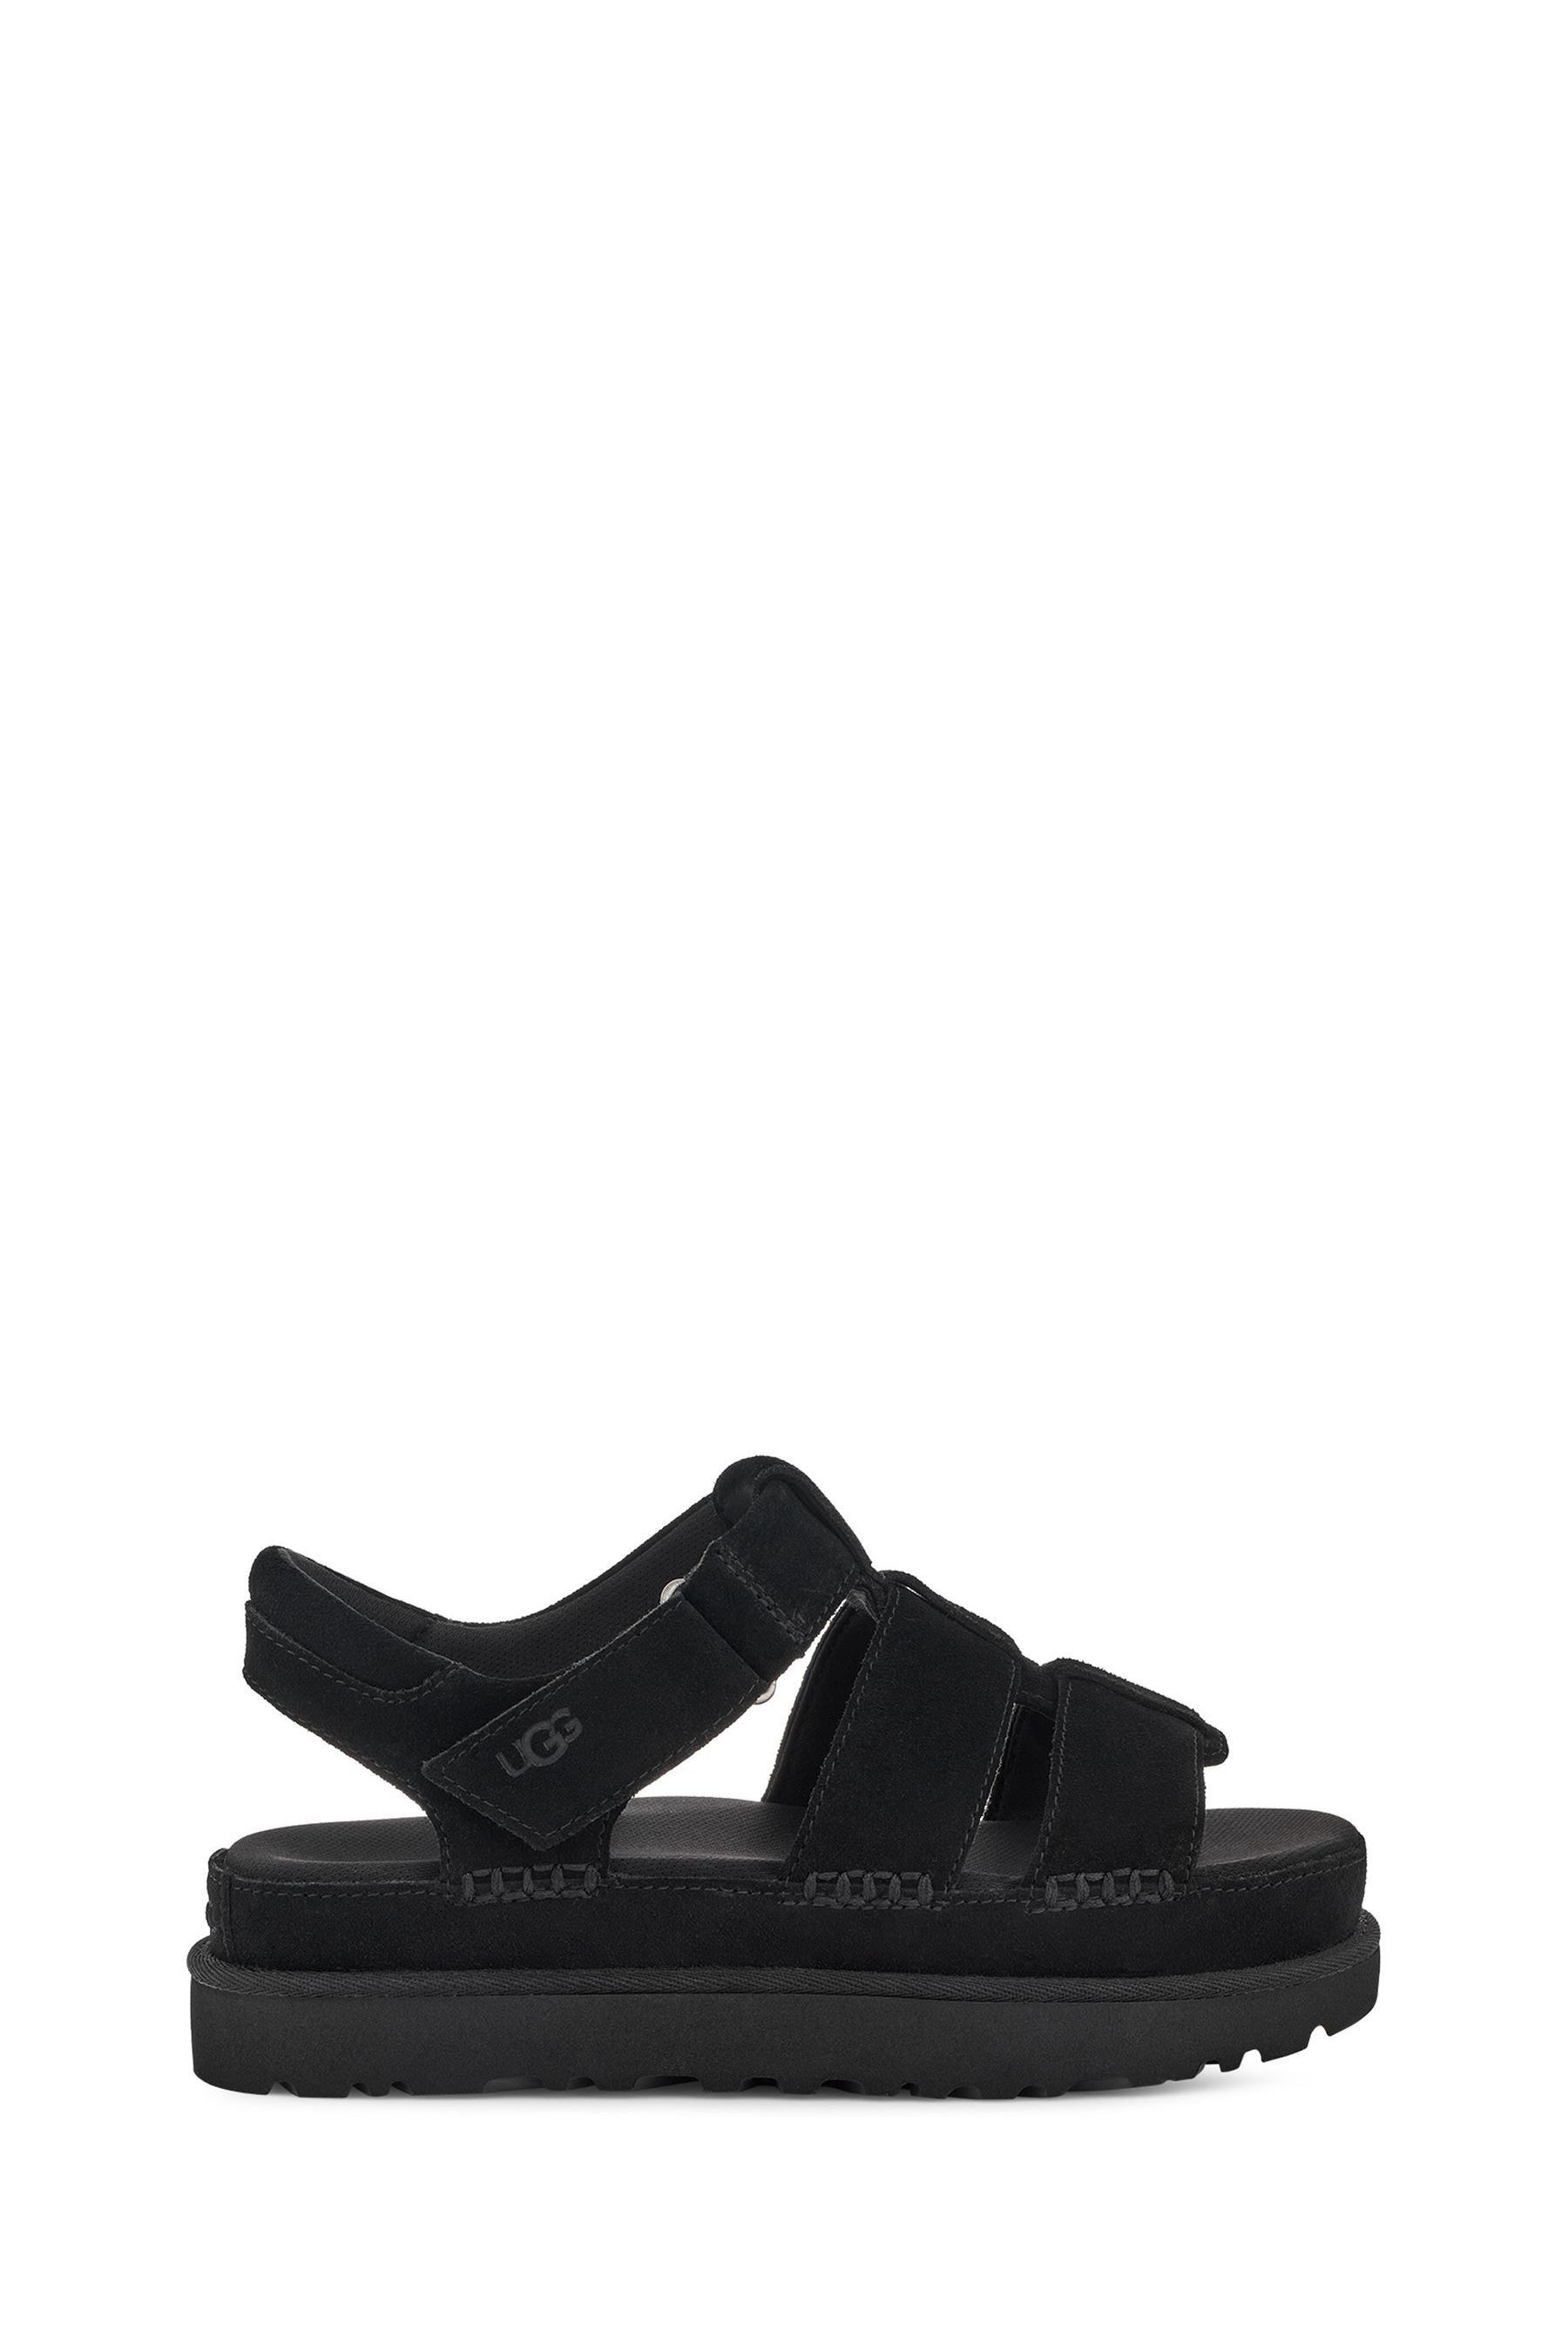 Buy UGG Goldenstar Strap Sandals from the Next UK online shop